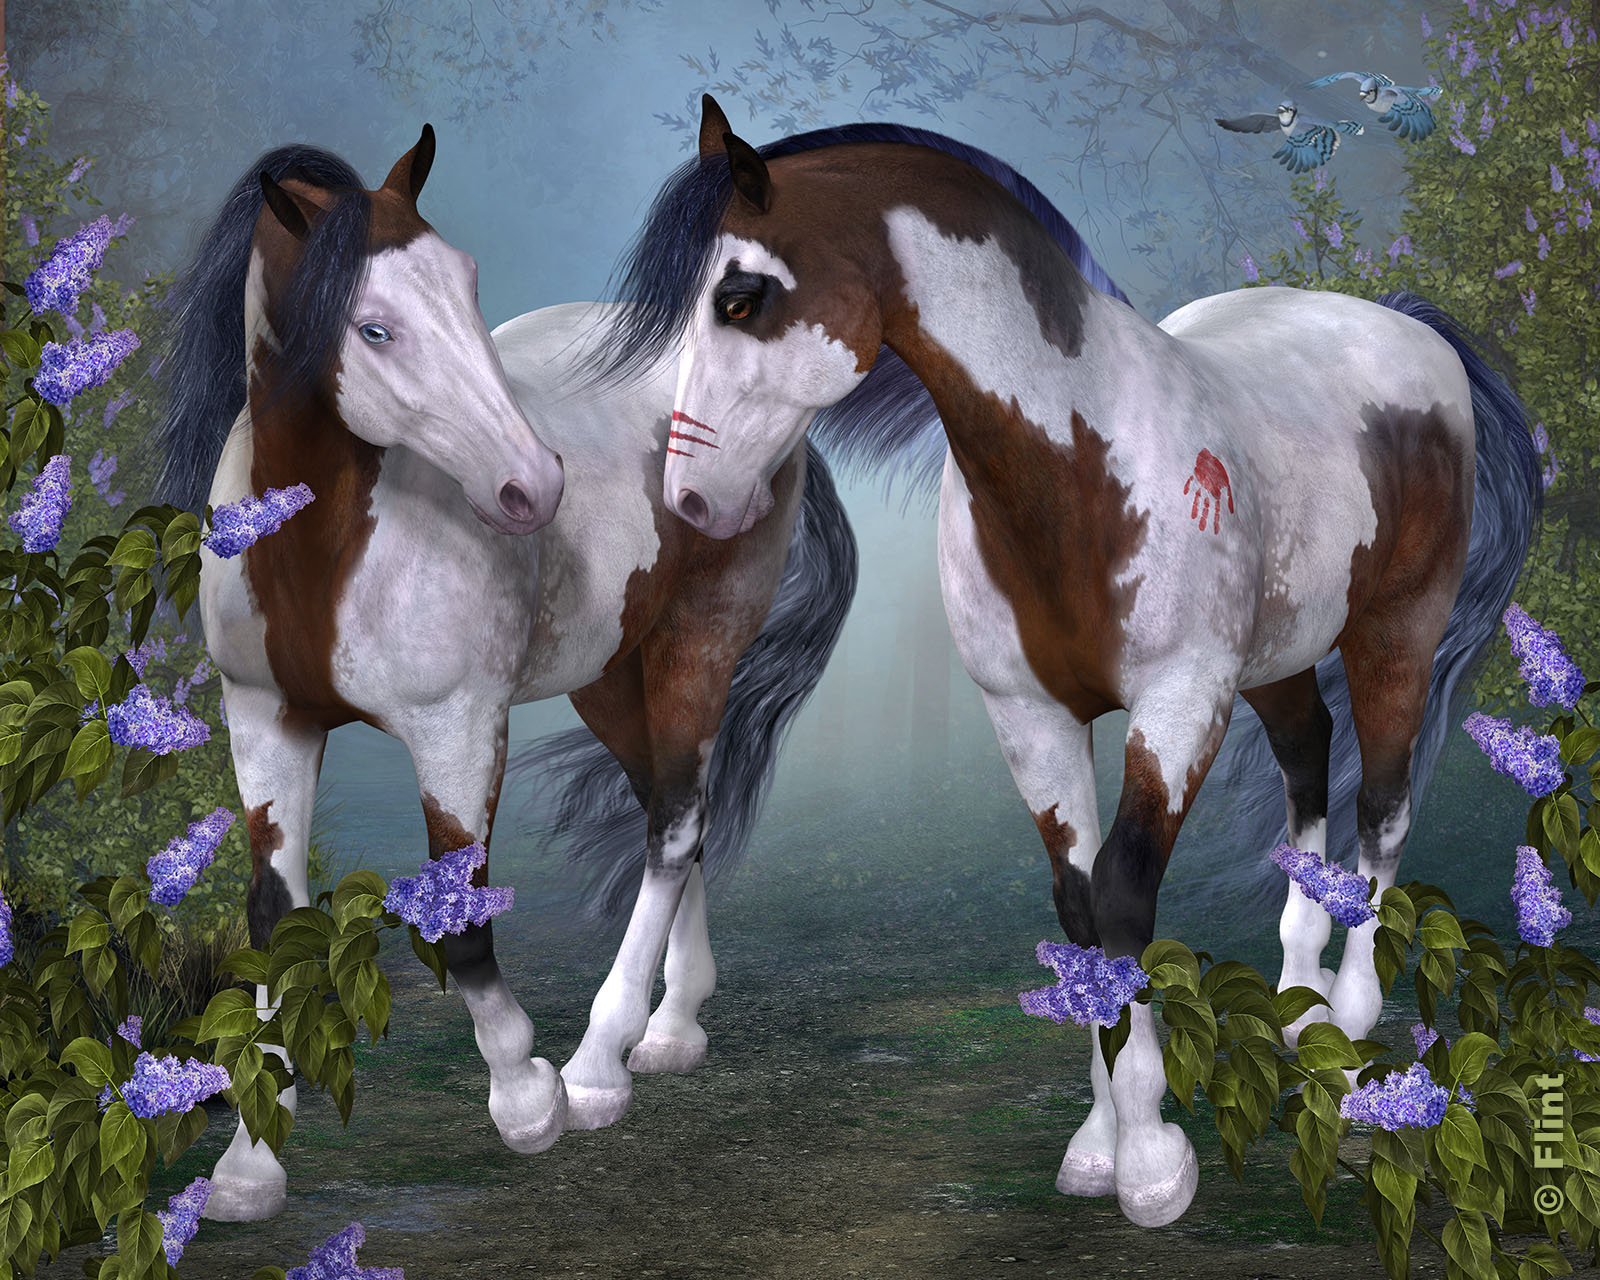 Decorated Ponies.jpg